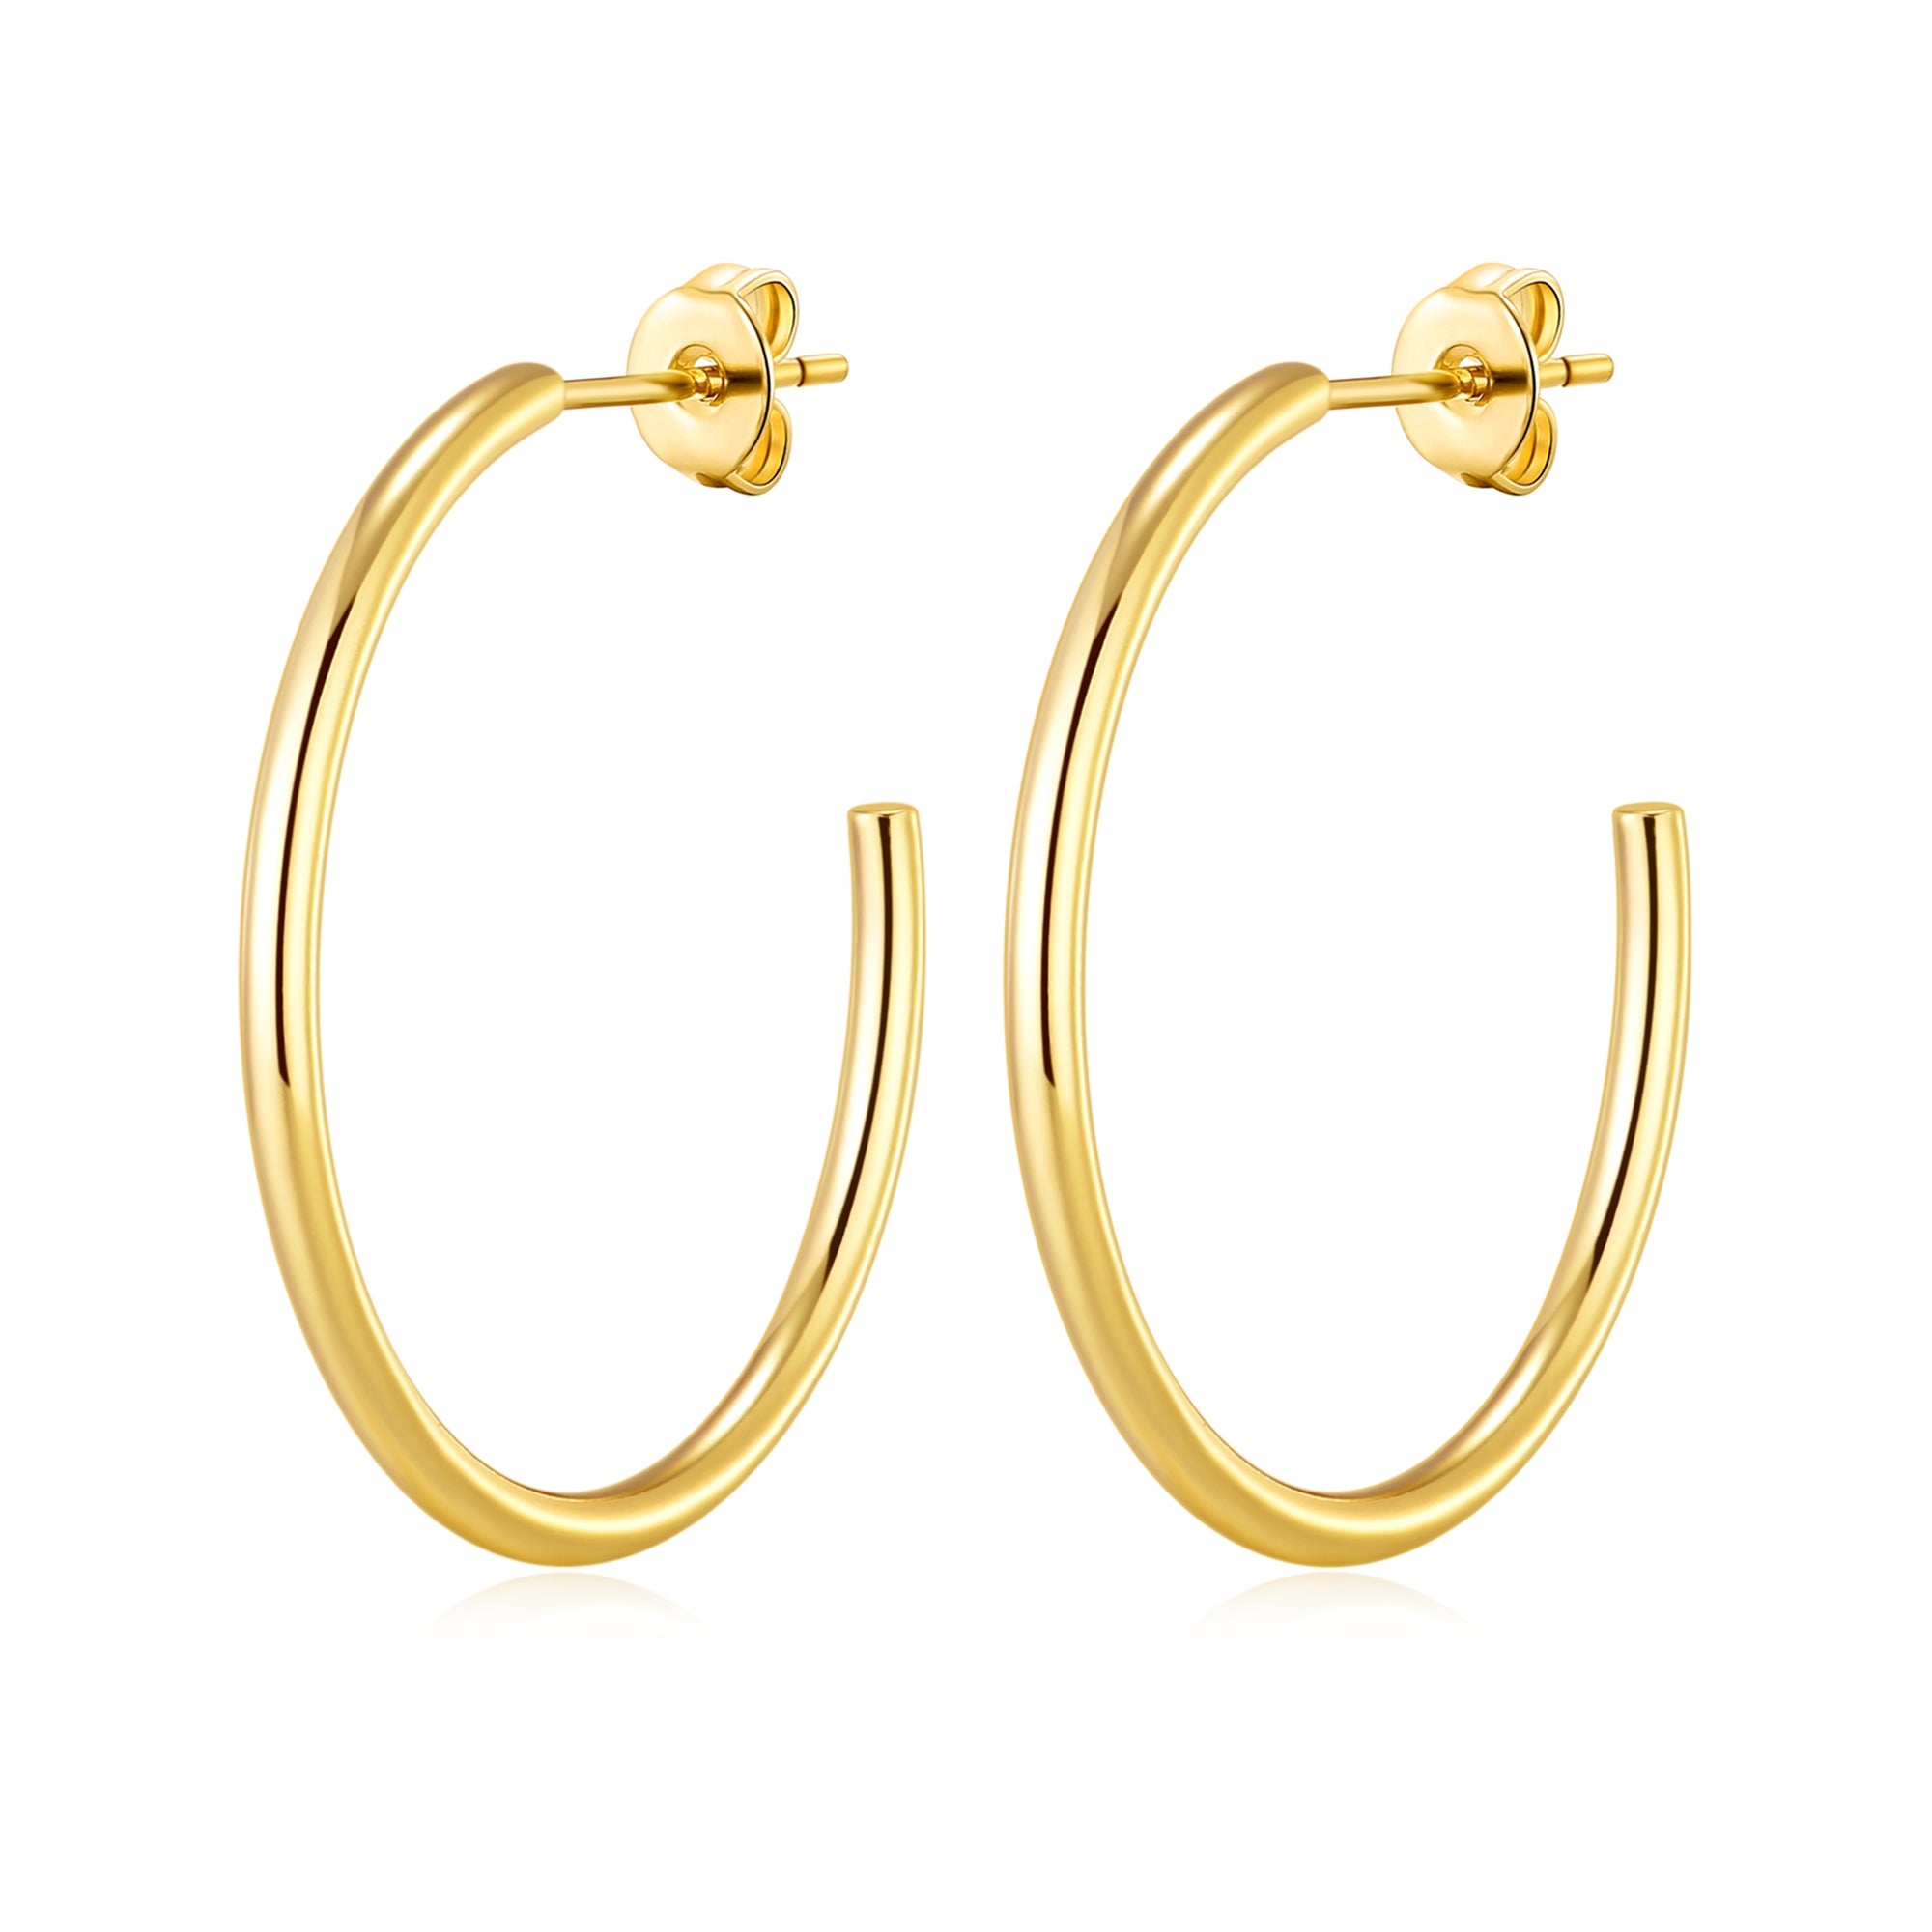 Gold Plated Round Hoop Earrings by Philip Jones Jewellery